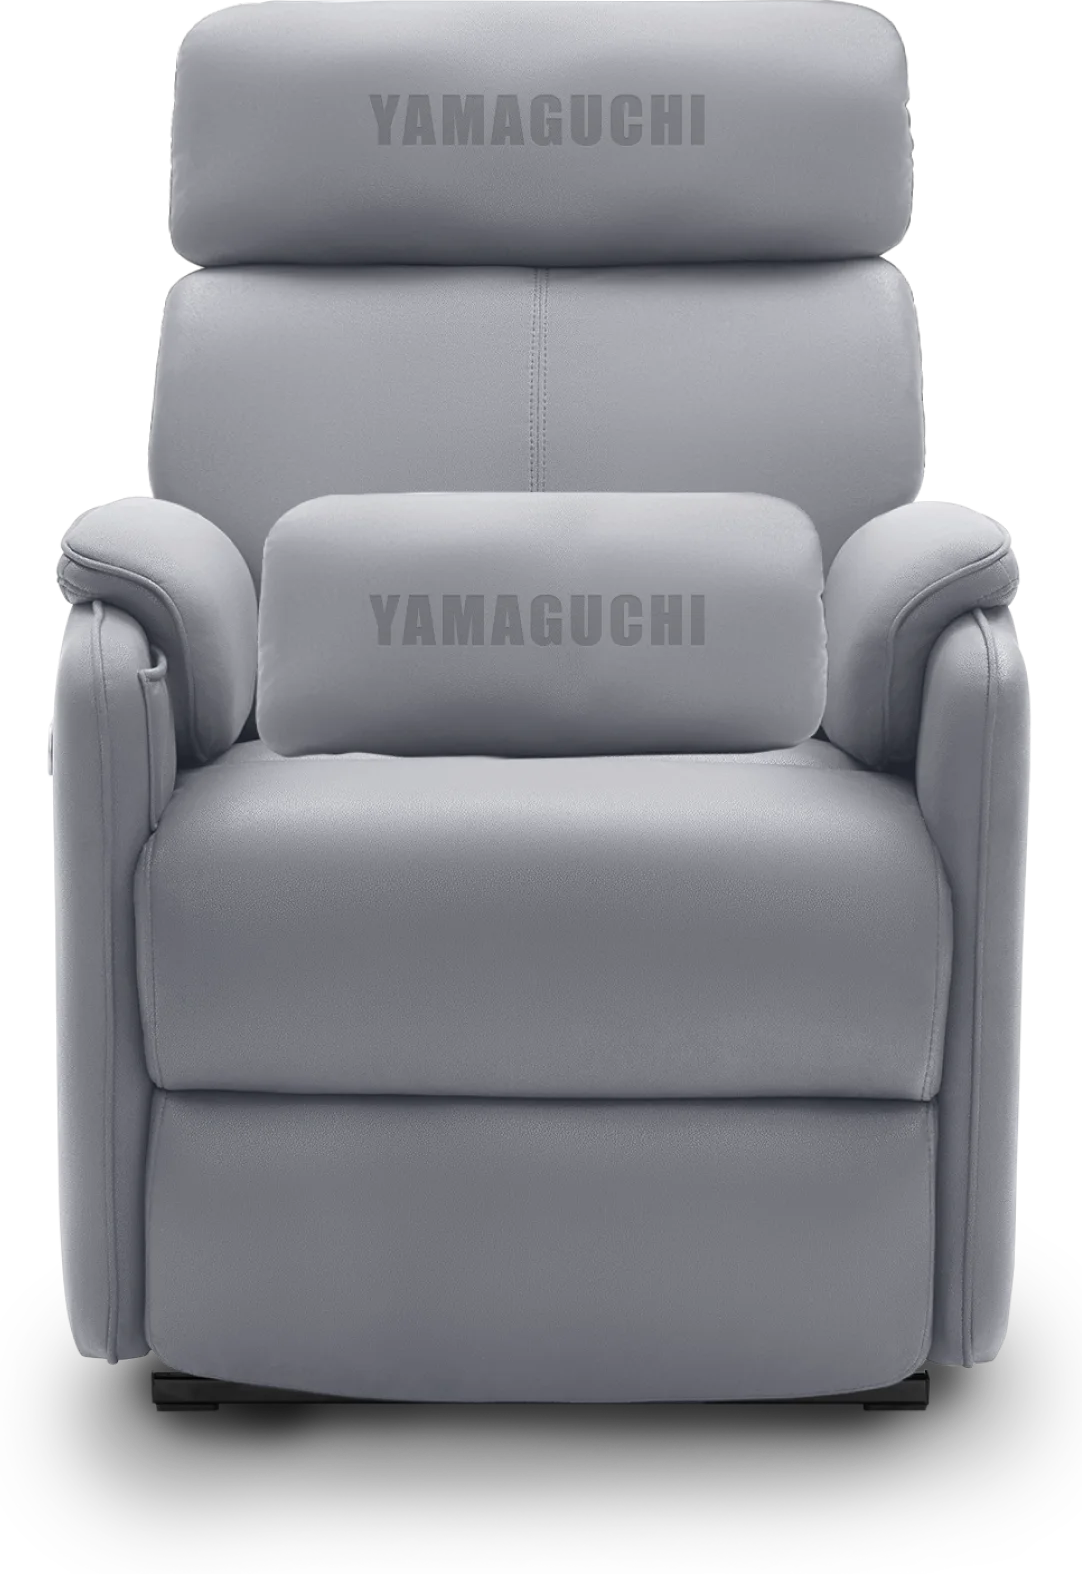 Yamaguchi sofa